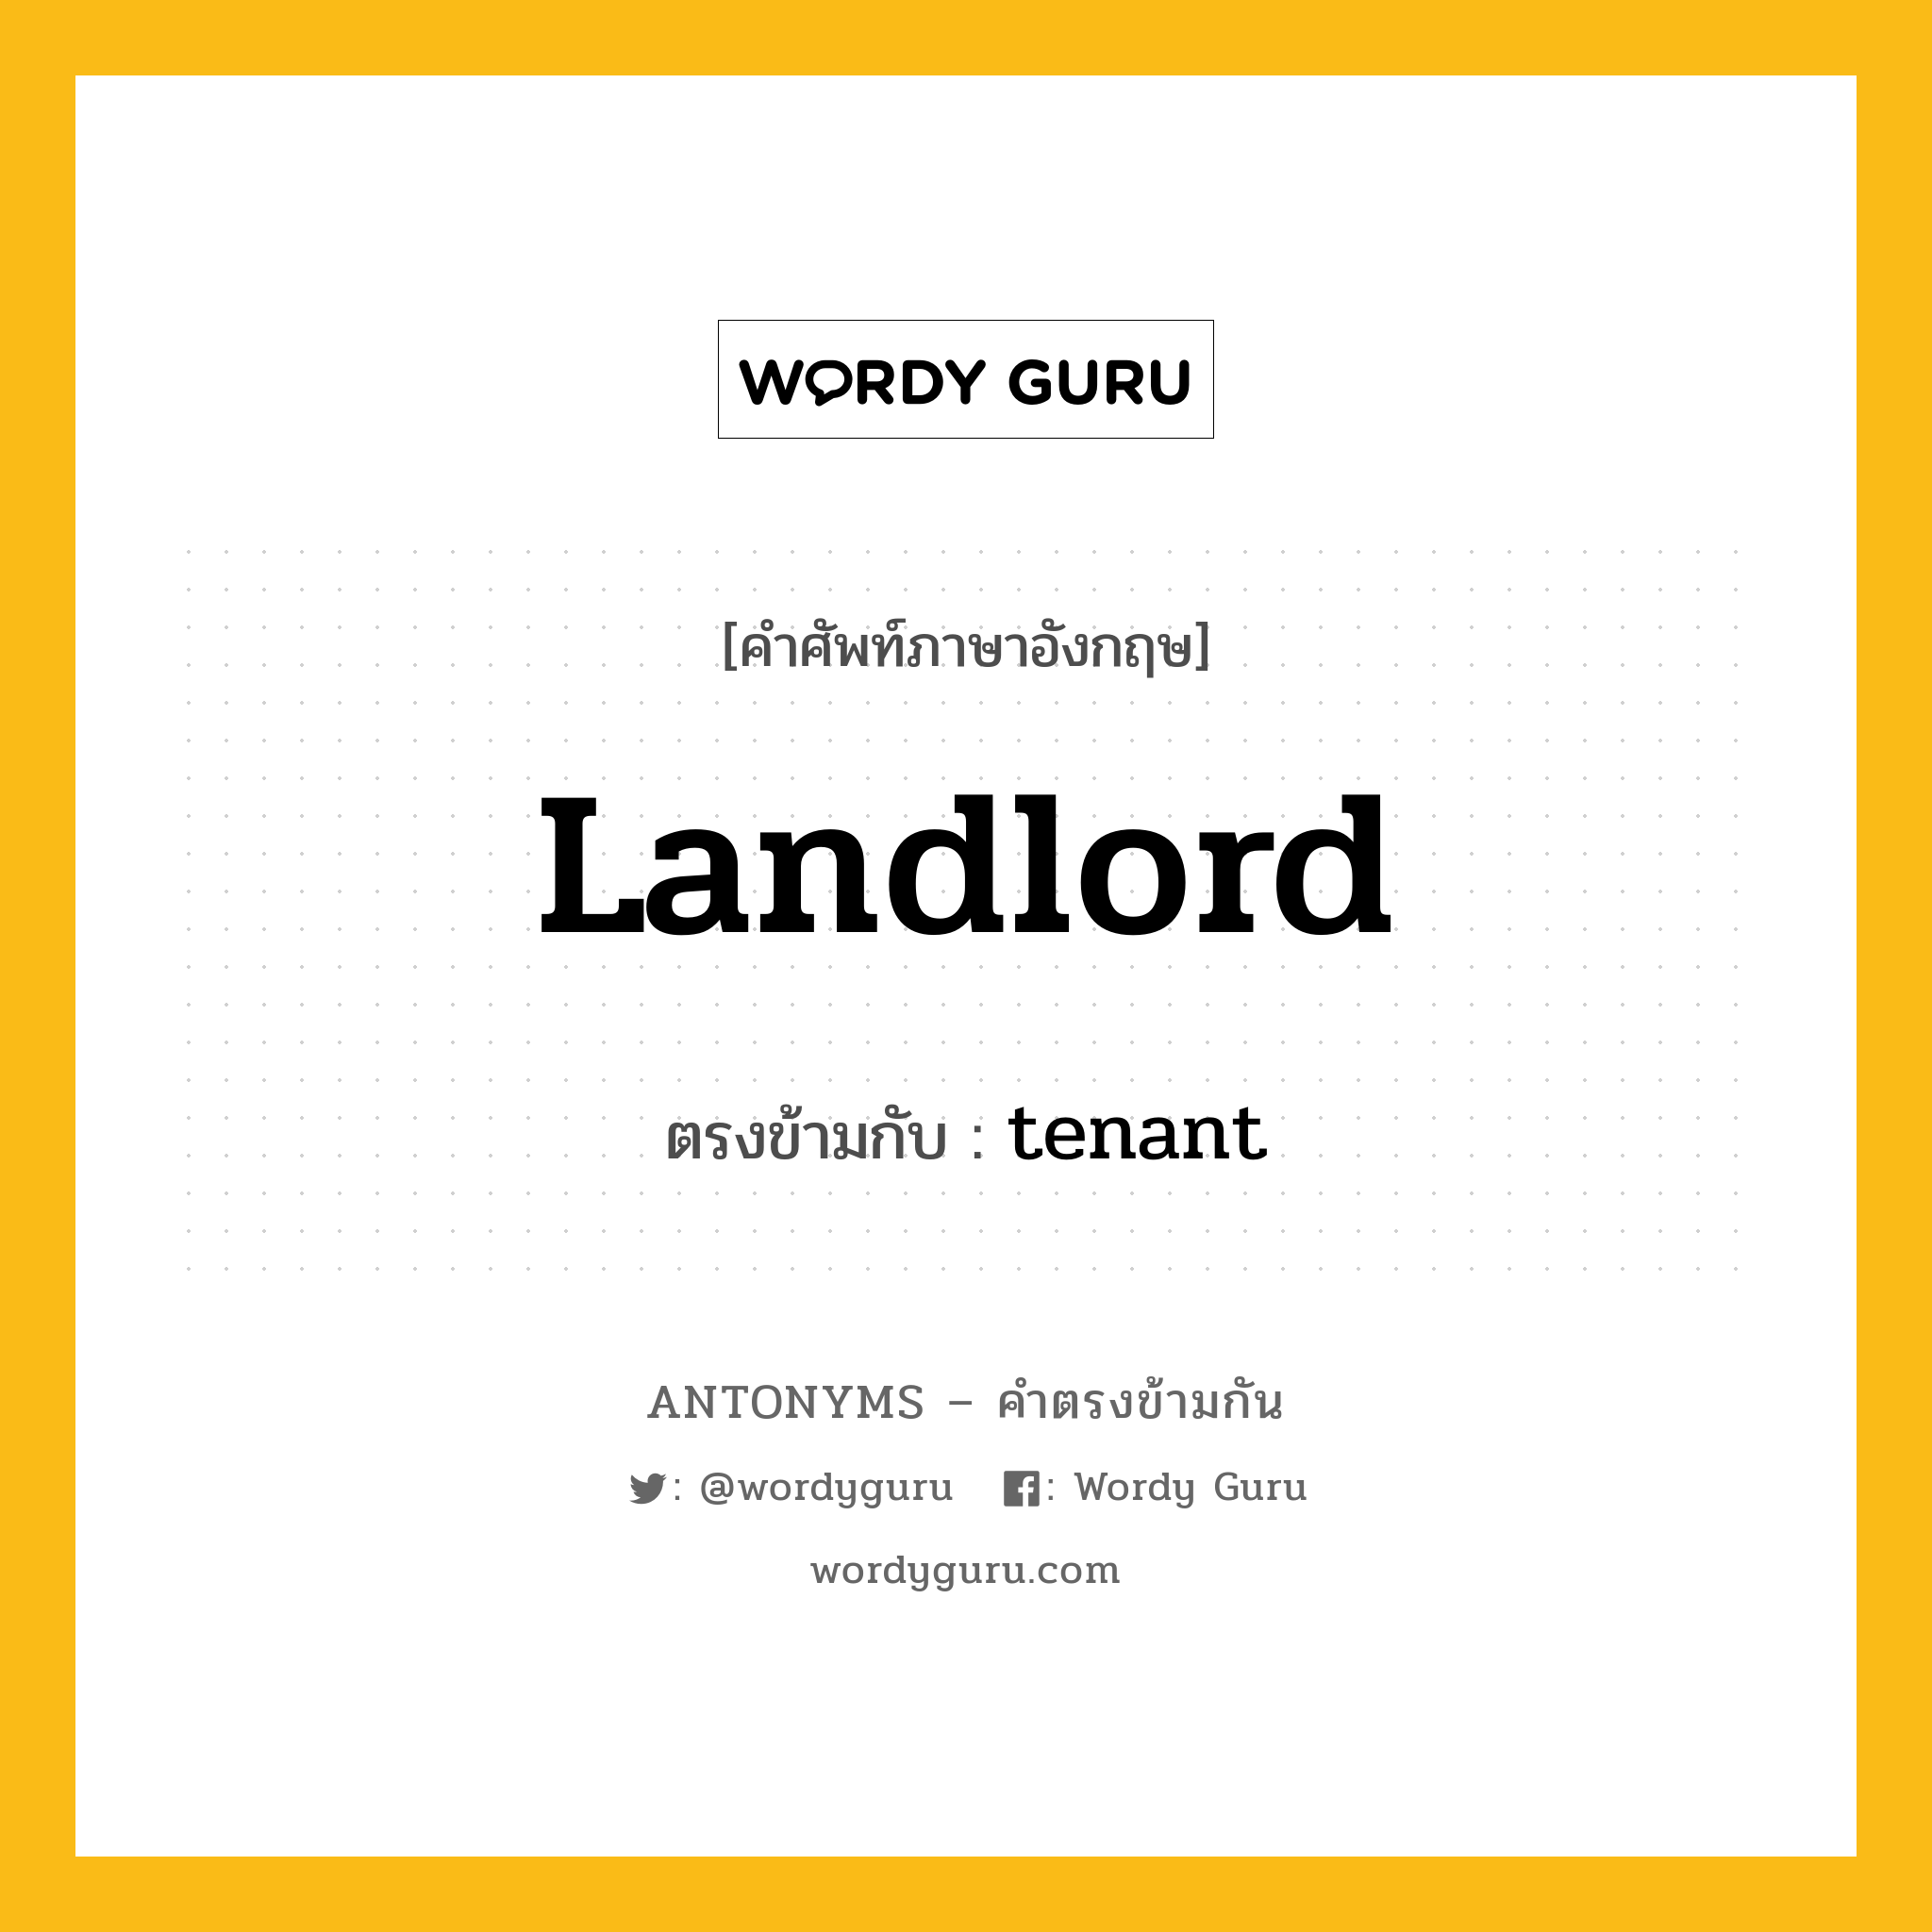 landlord เป็นคำตรงข้ามกับคำไหนบ้าง?, คำศัพท์ภาษาอังกฤษ landlord ตรงข้ามกับ tenant หมวด tenant